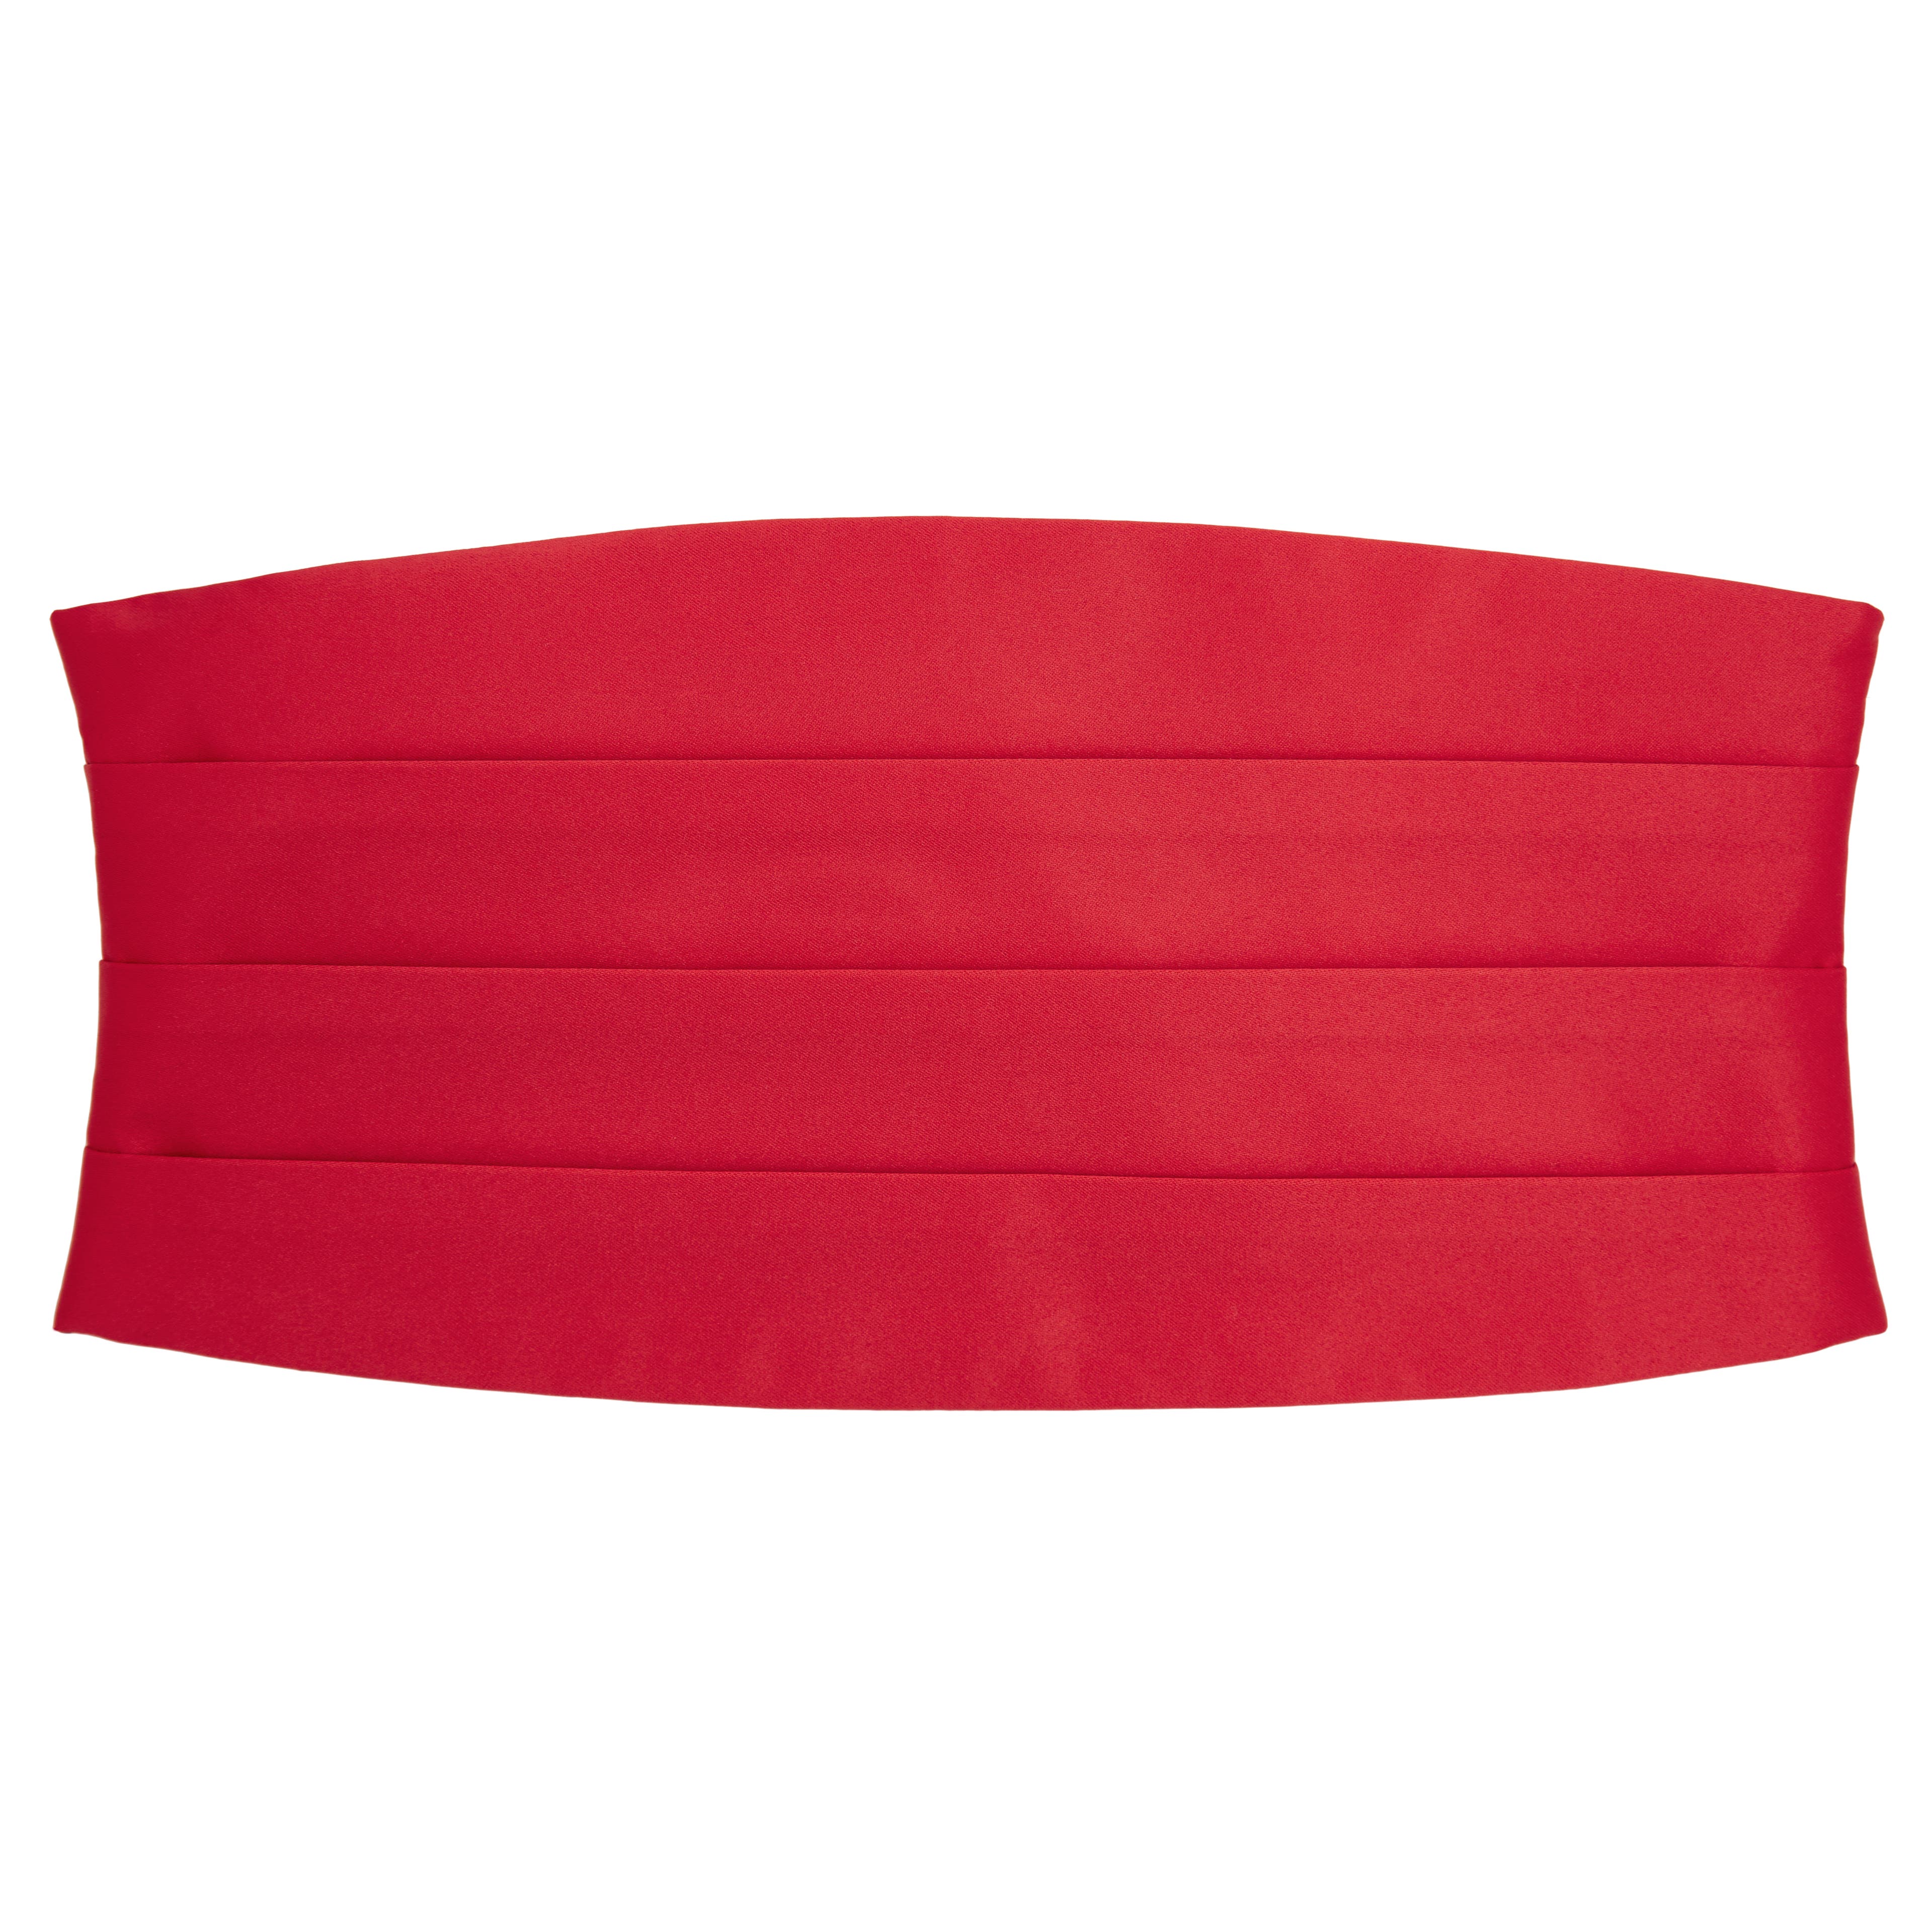 Základná šerpa v červenej farbe